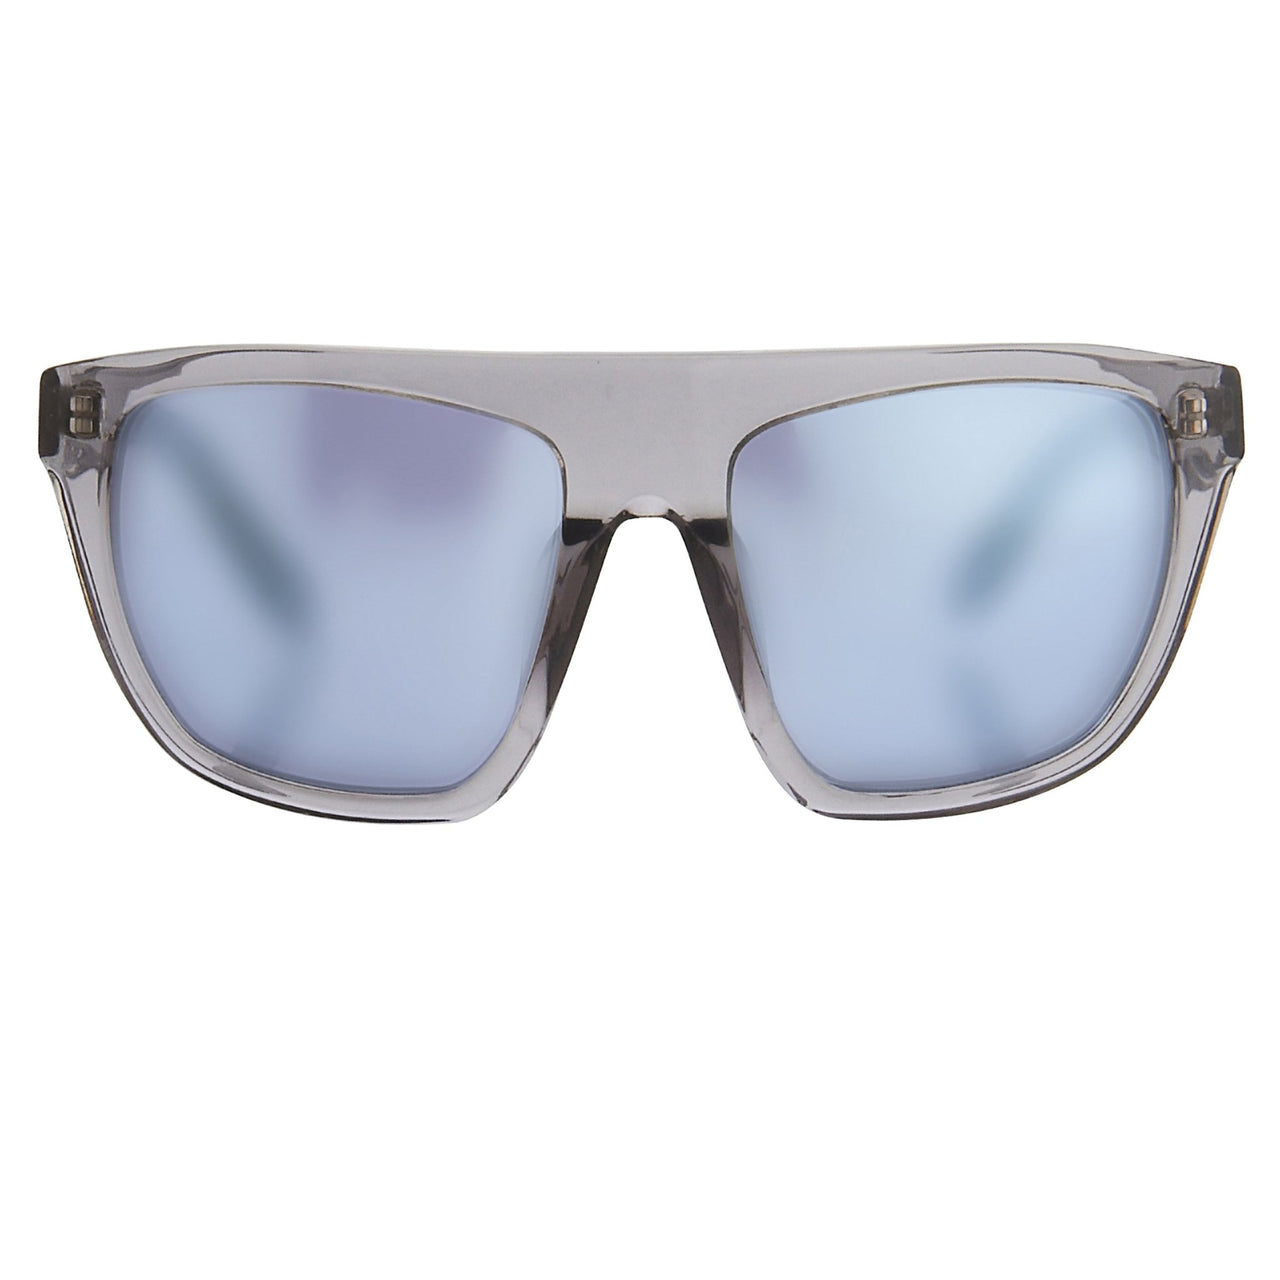 Alexander Wang Sunglasses Slanted Dark Grey and Blue – Watches & Crystals